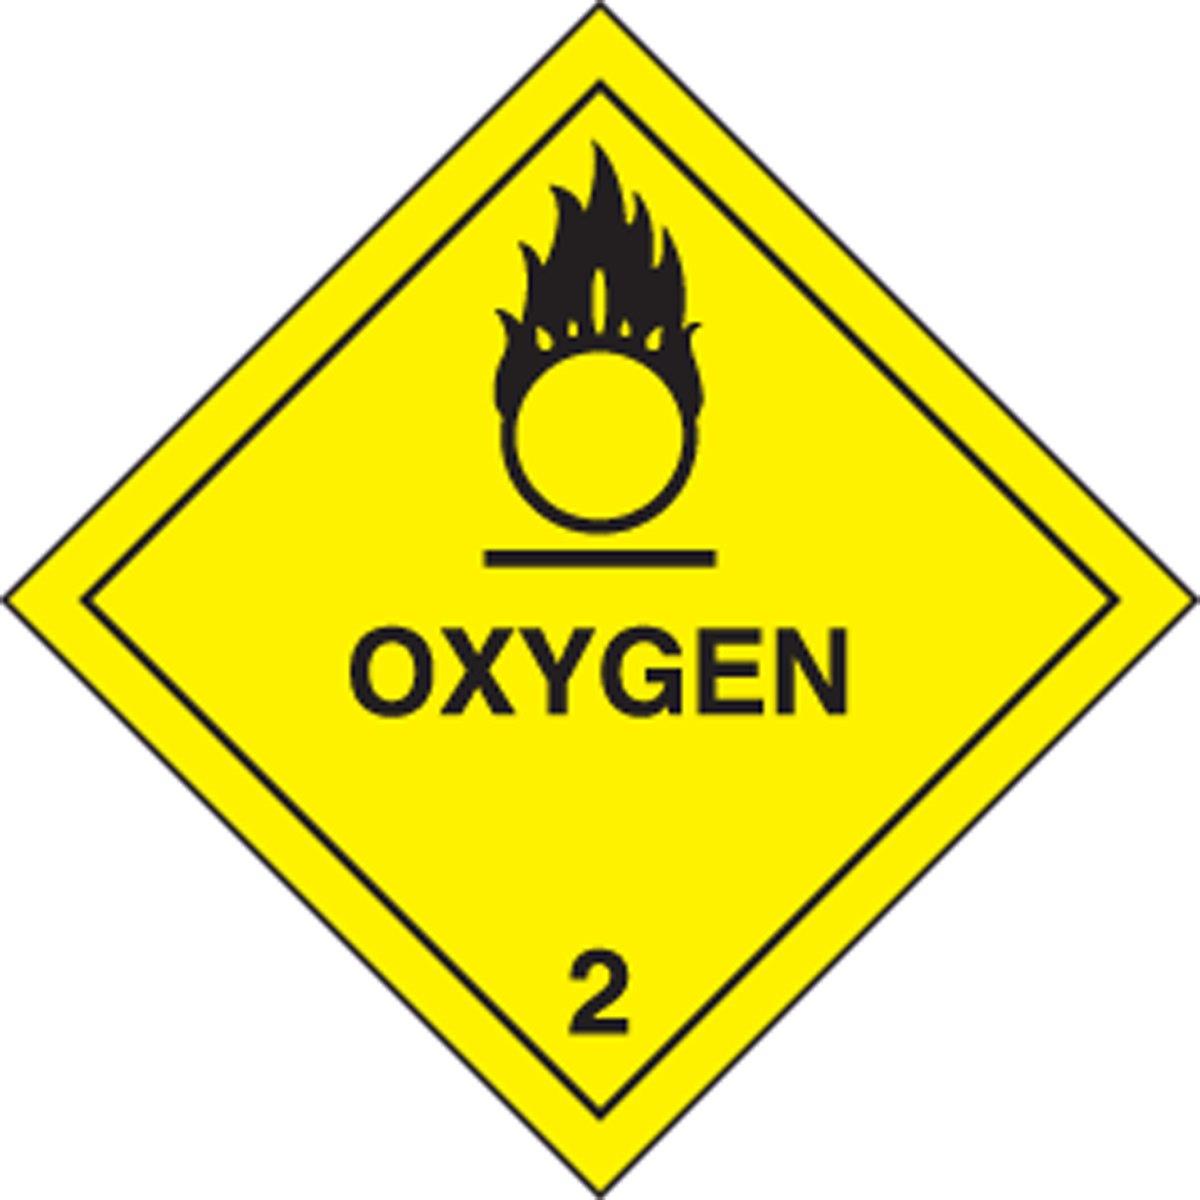 Oxygen Sticker: Hazard Class 2